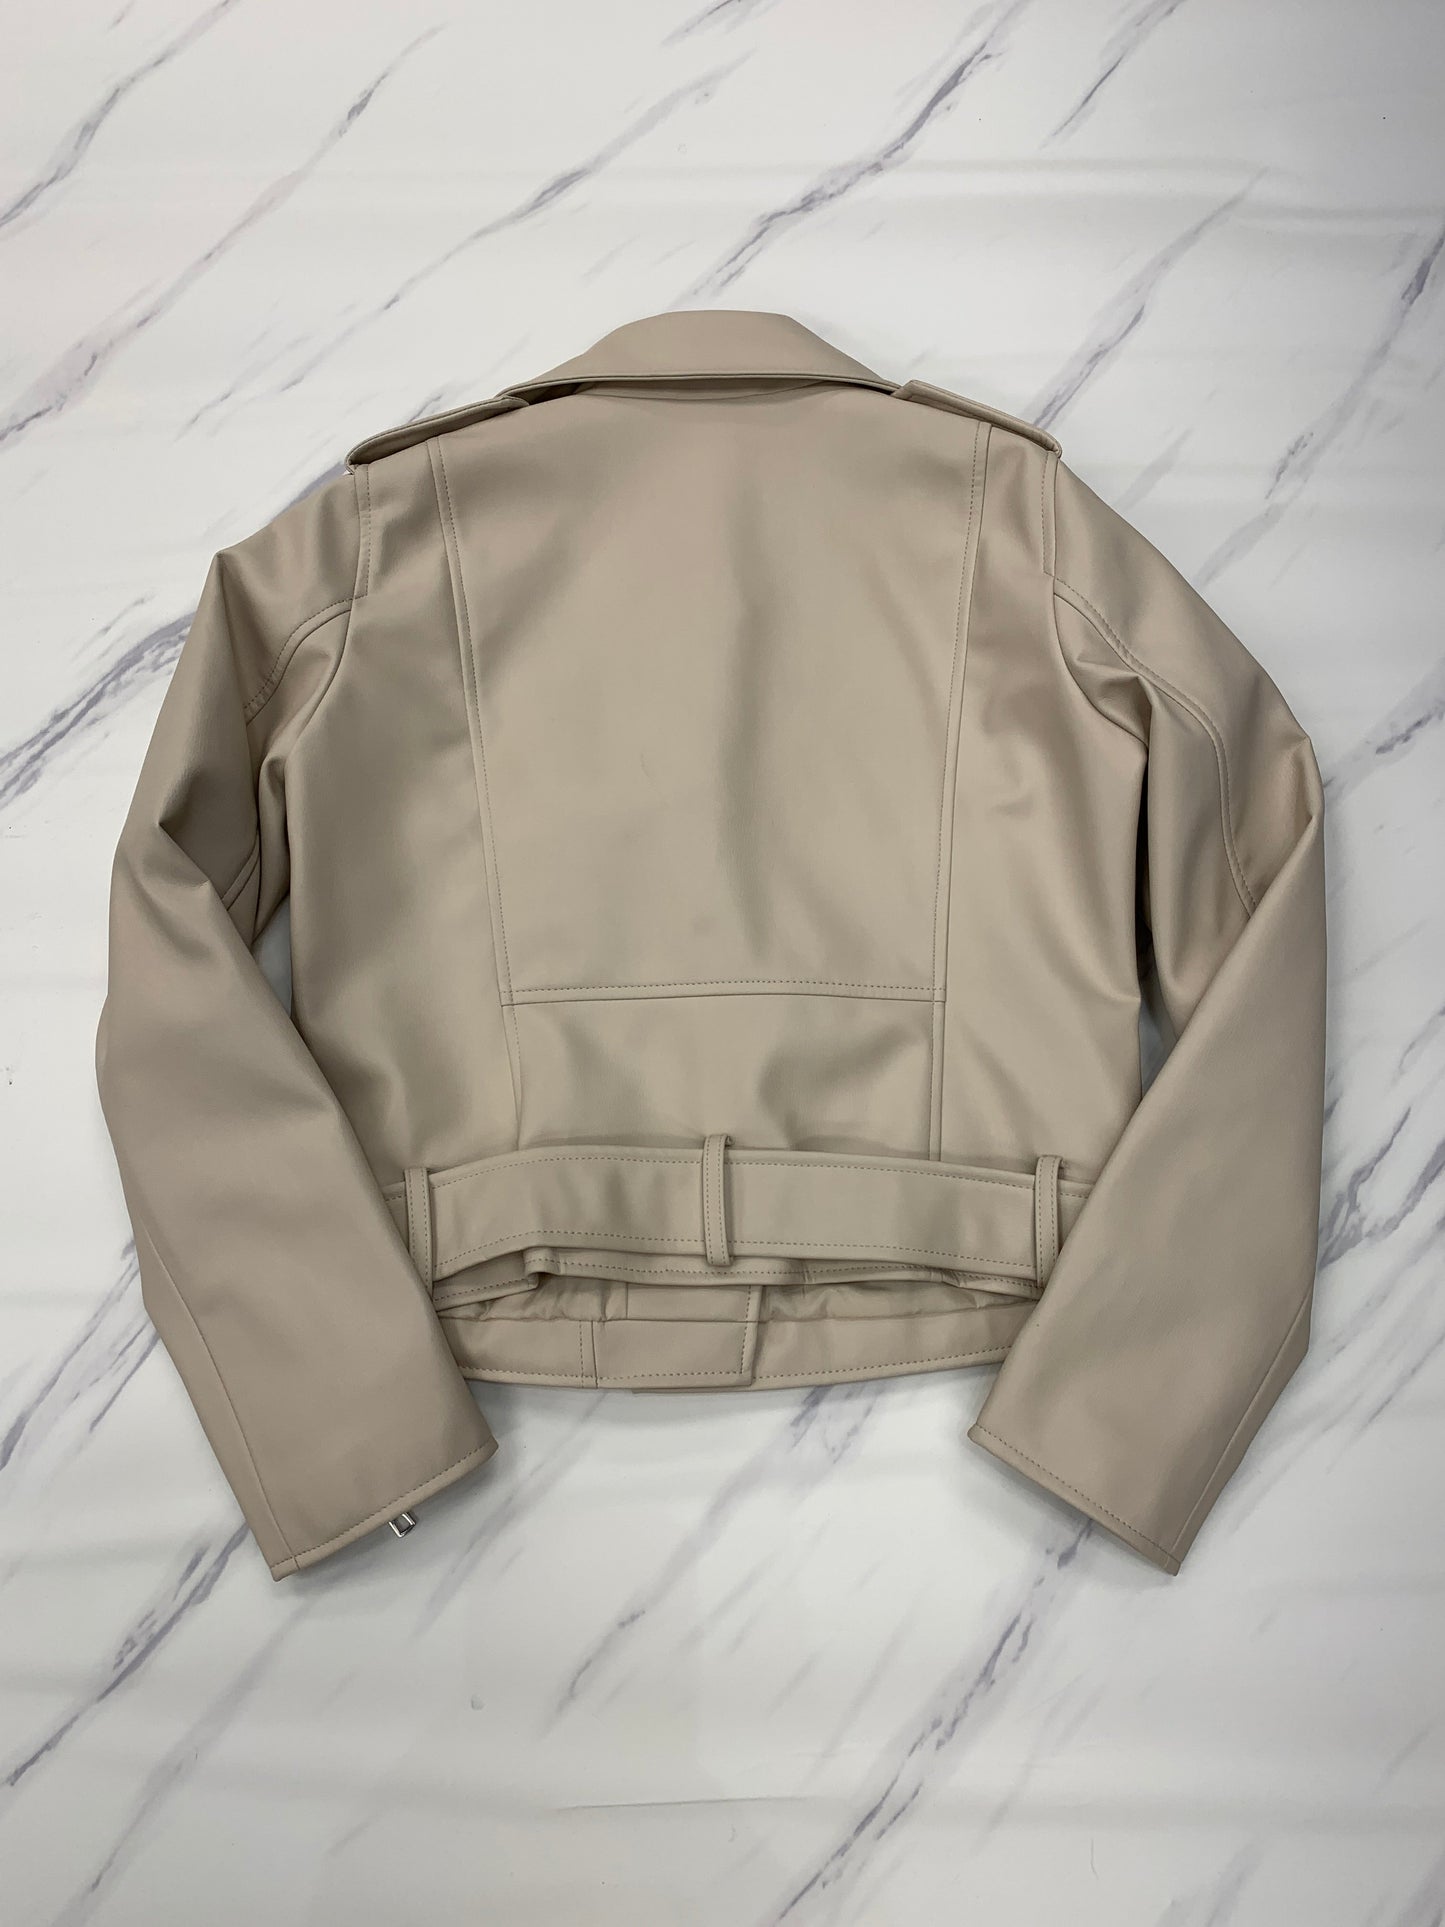 Jacket Moto By Zara  Size: M